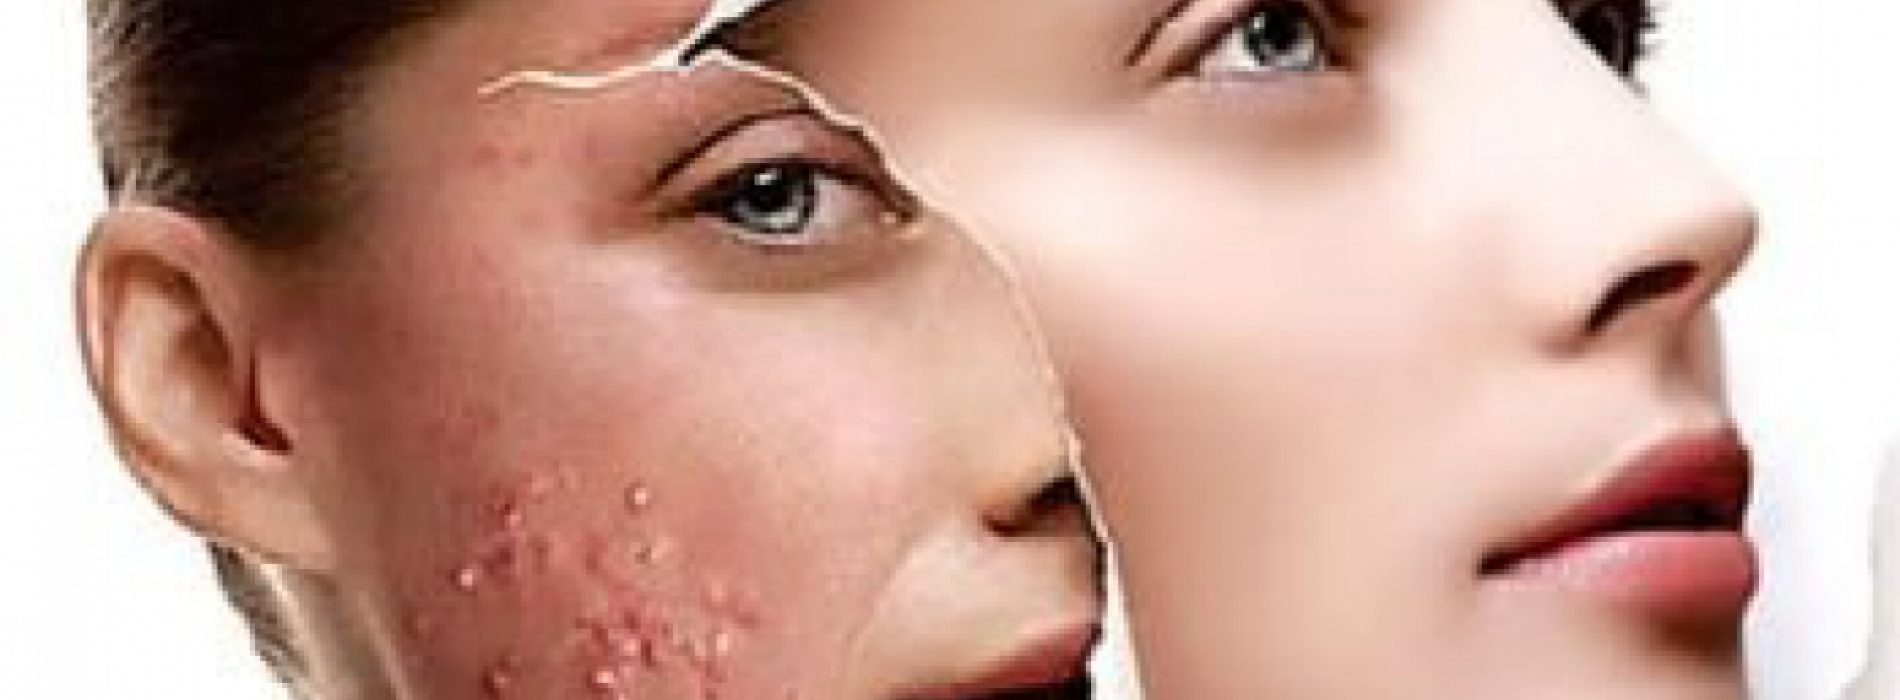 Hoe verhelp je Acne, eczeem en andere huidproblemen op een natuurlijke wijze